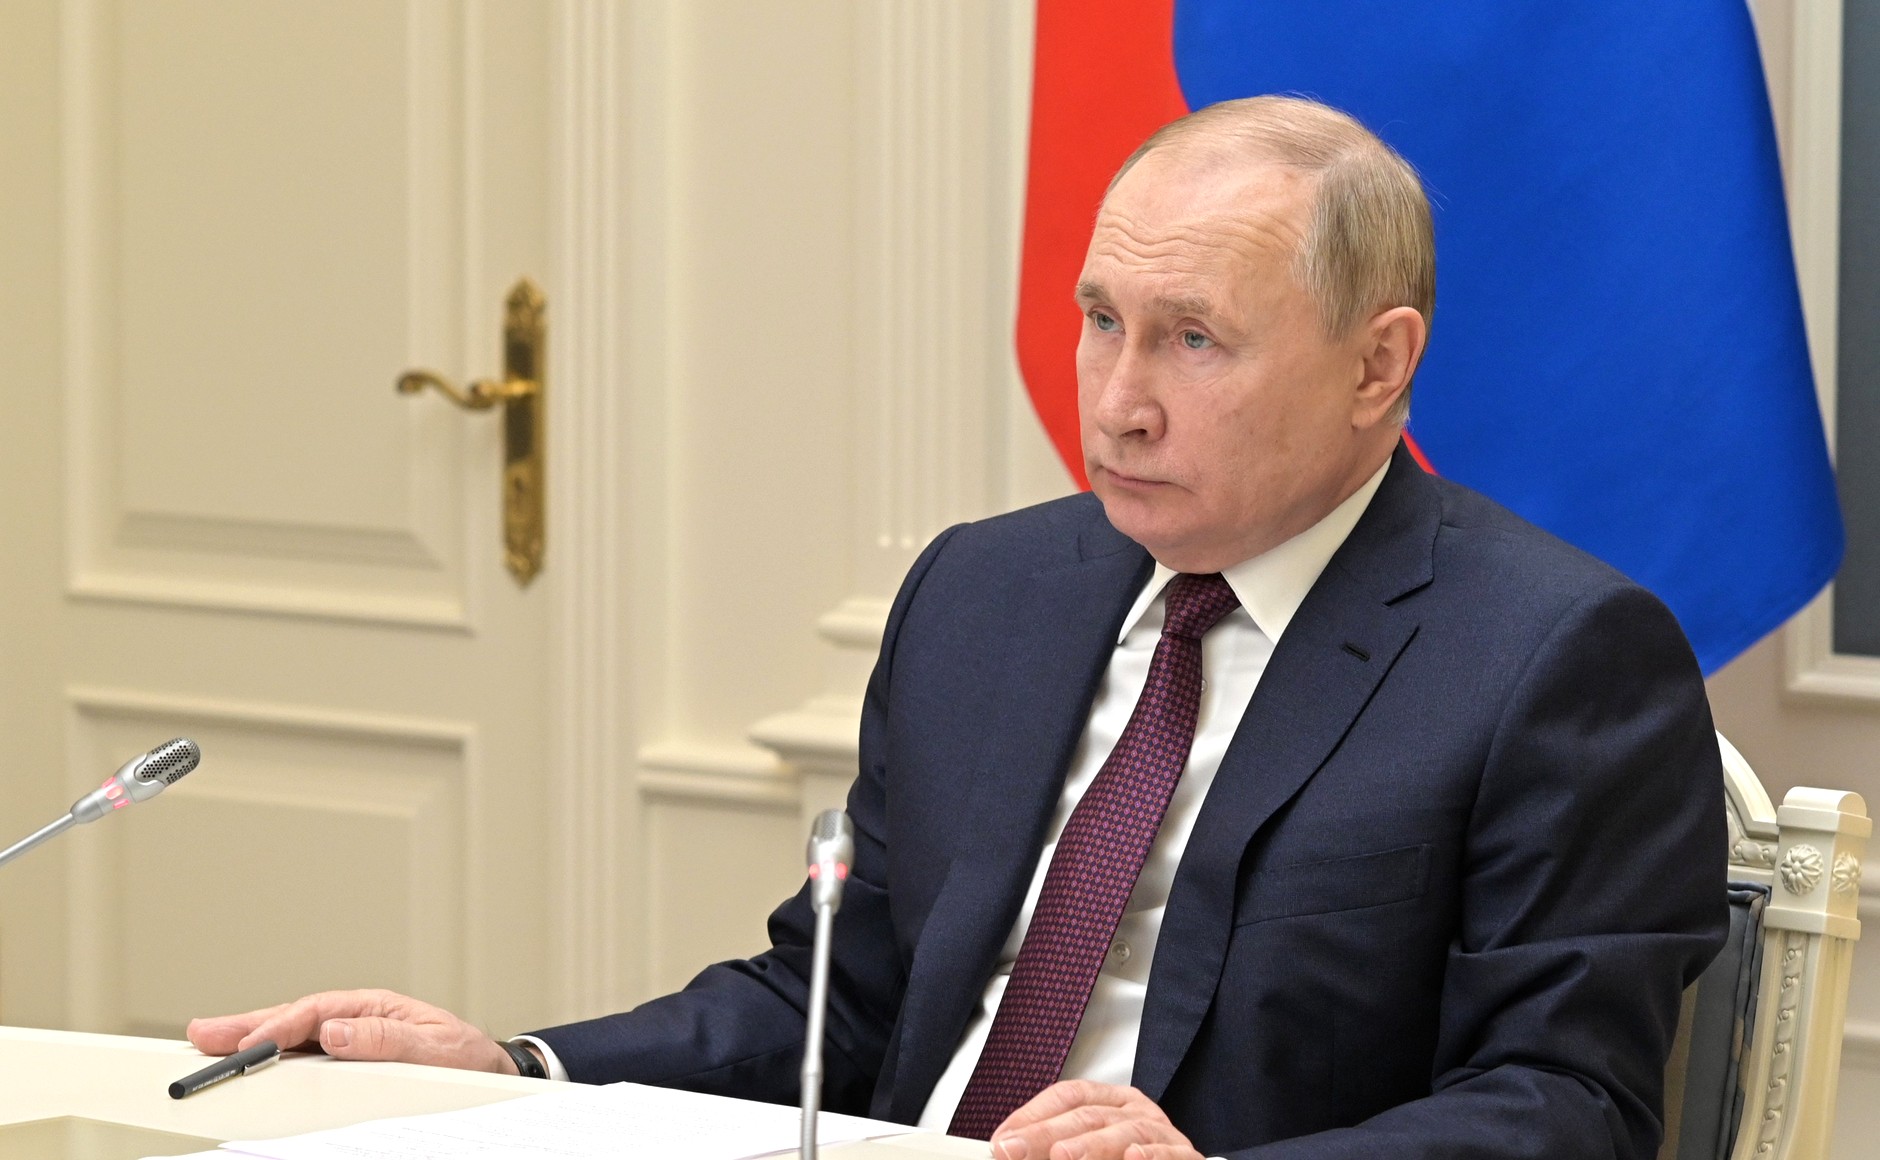 Ответные меры: Путин подписал указ о визовых ограничениях для недружественных стран